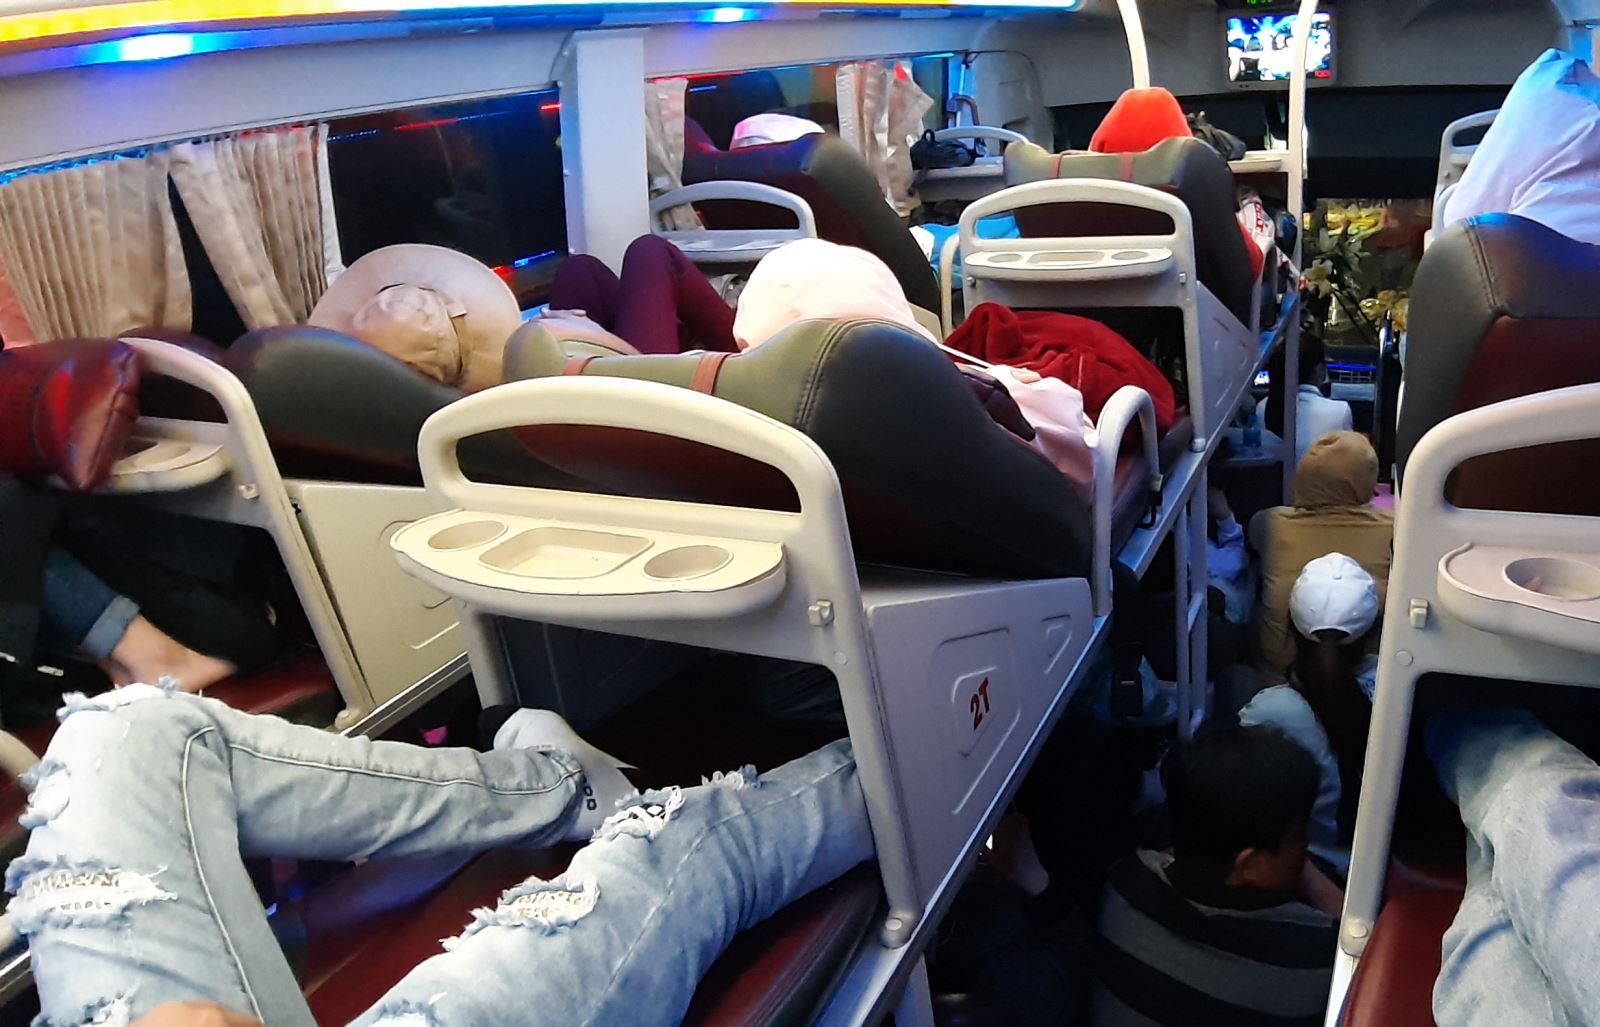 Xe giường nằm nhồi nhét chật kín hành khách | baotintuc.vn